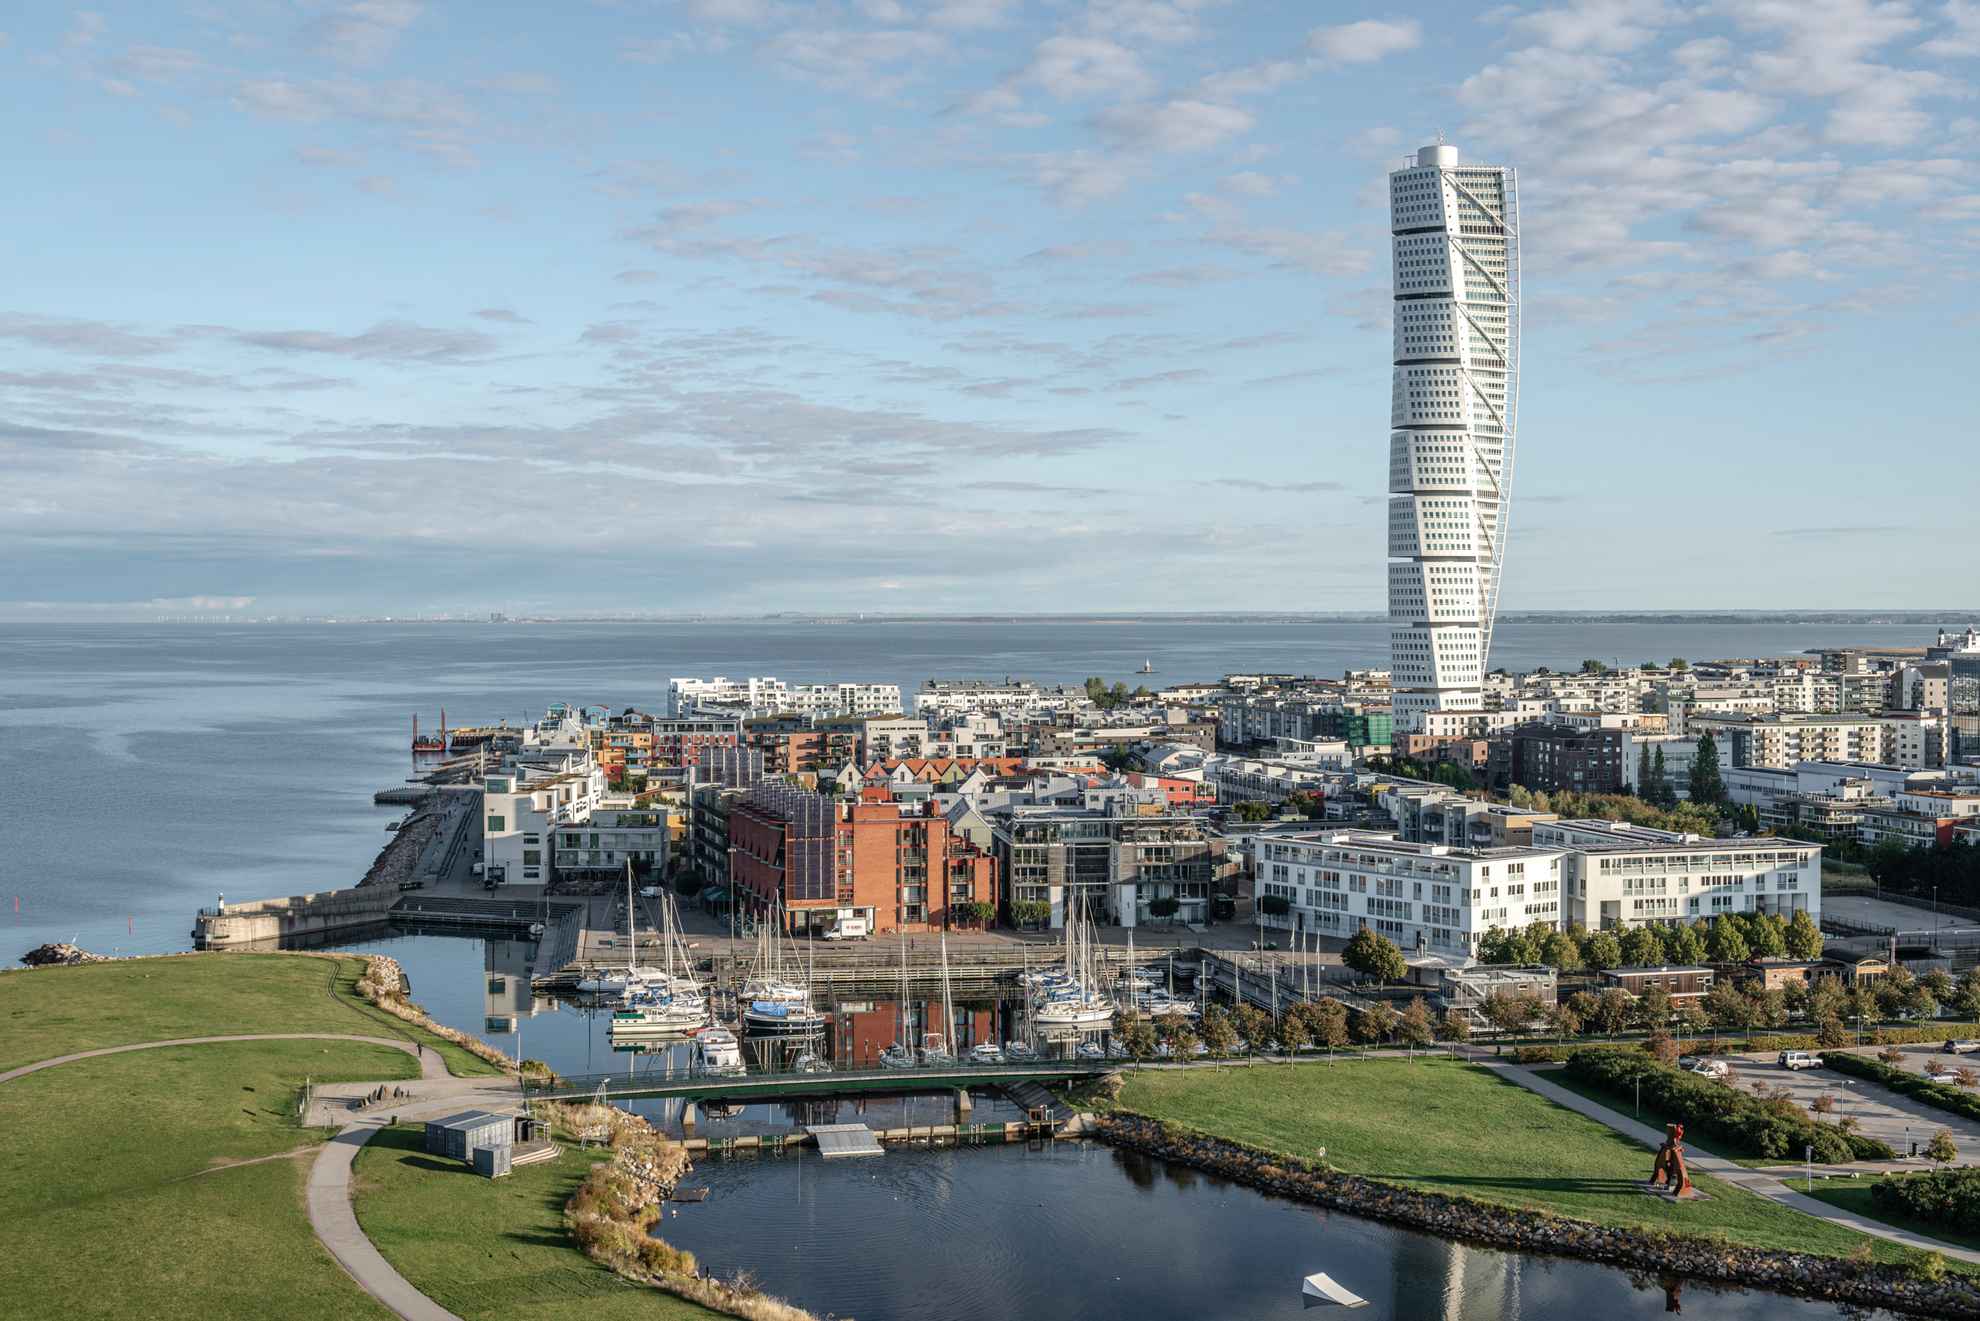 Luchtfoto van moderne gebouwen in een havengebied met een groot hoogbouwgebouw.